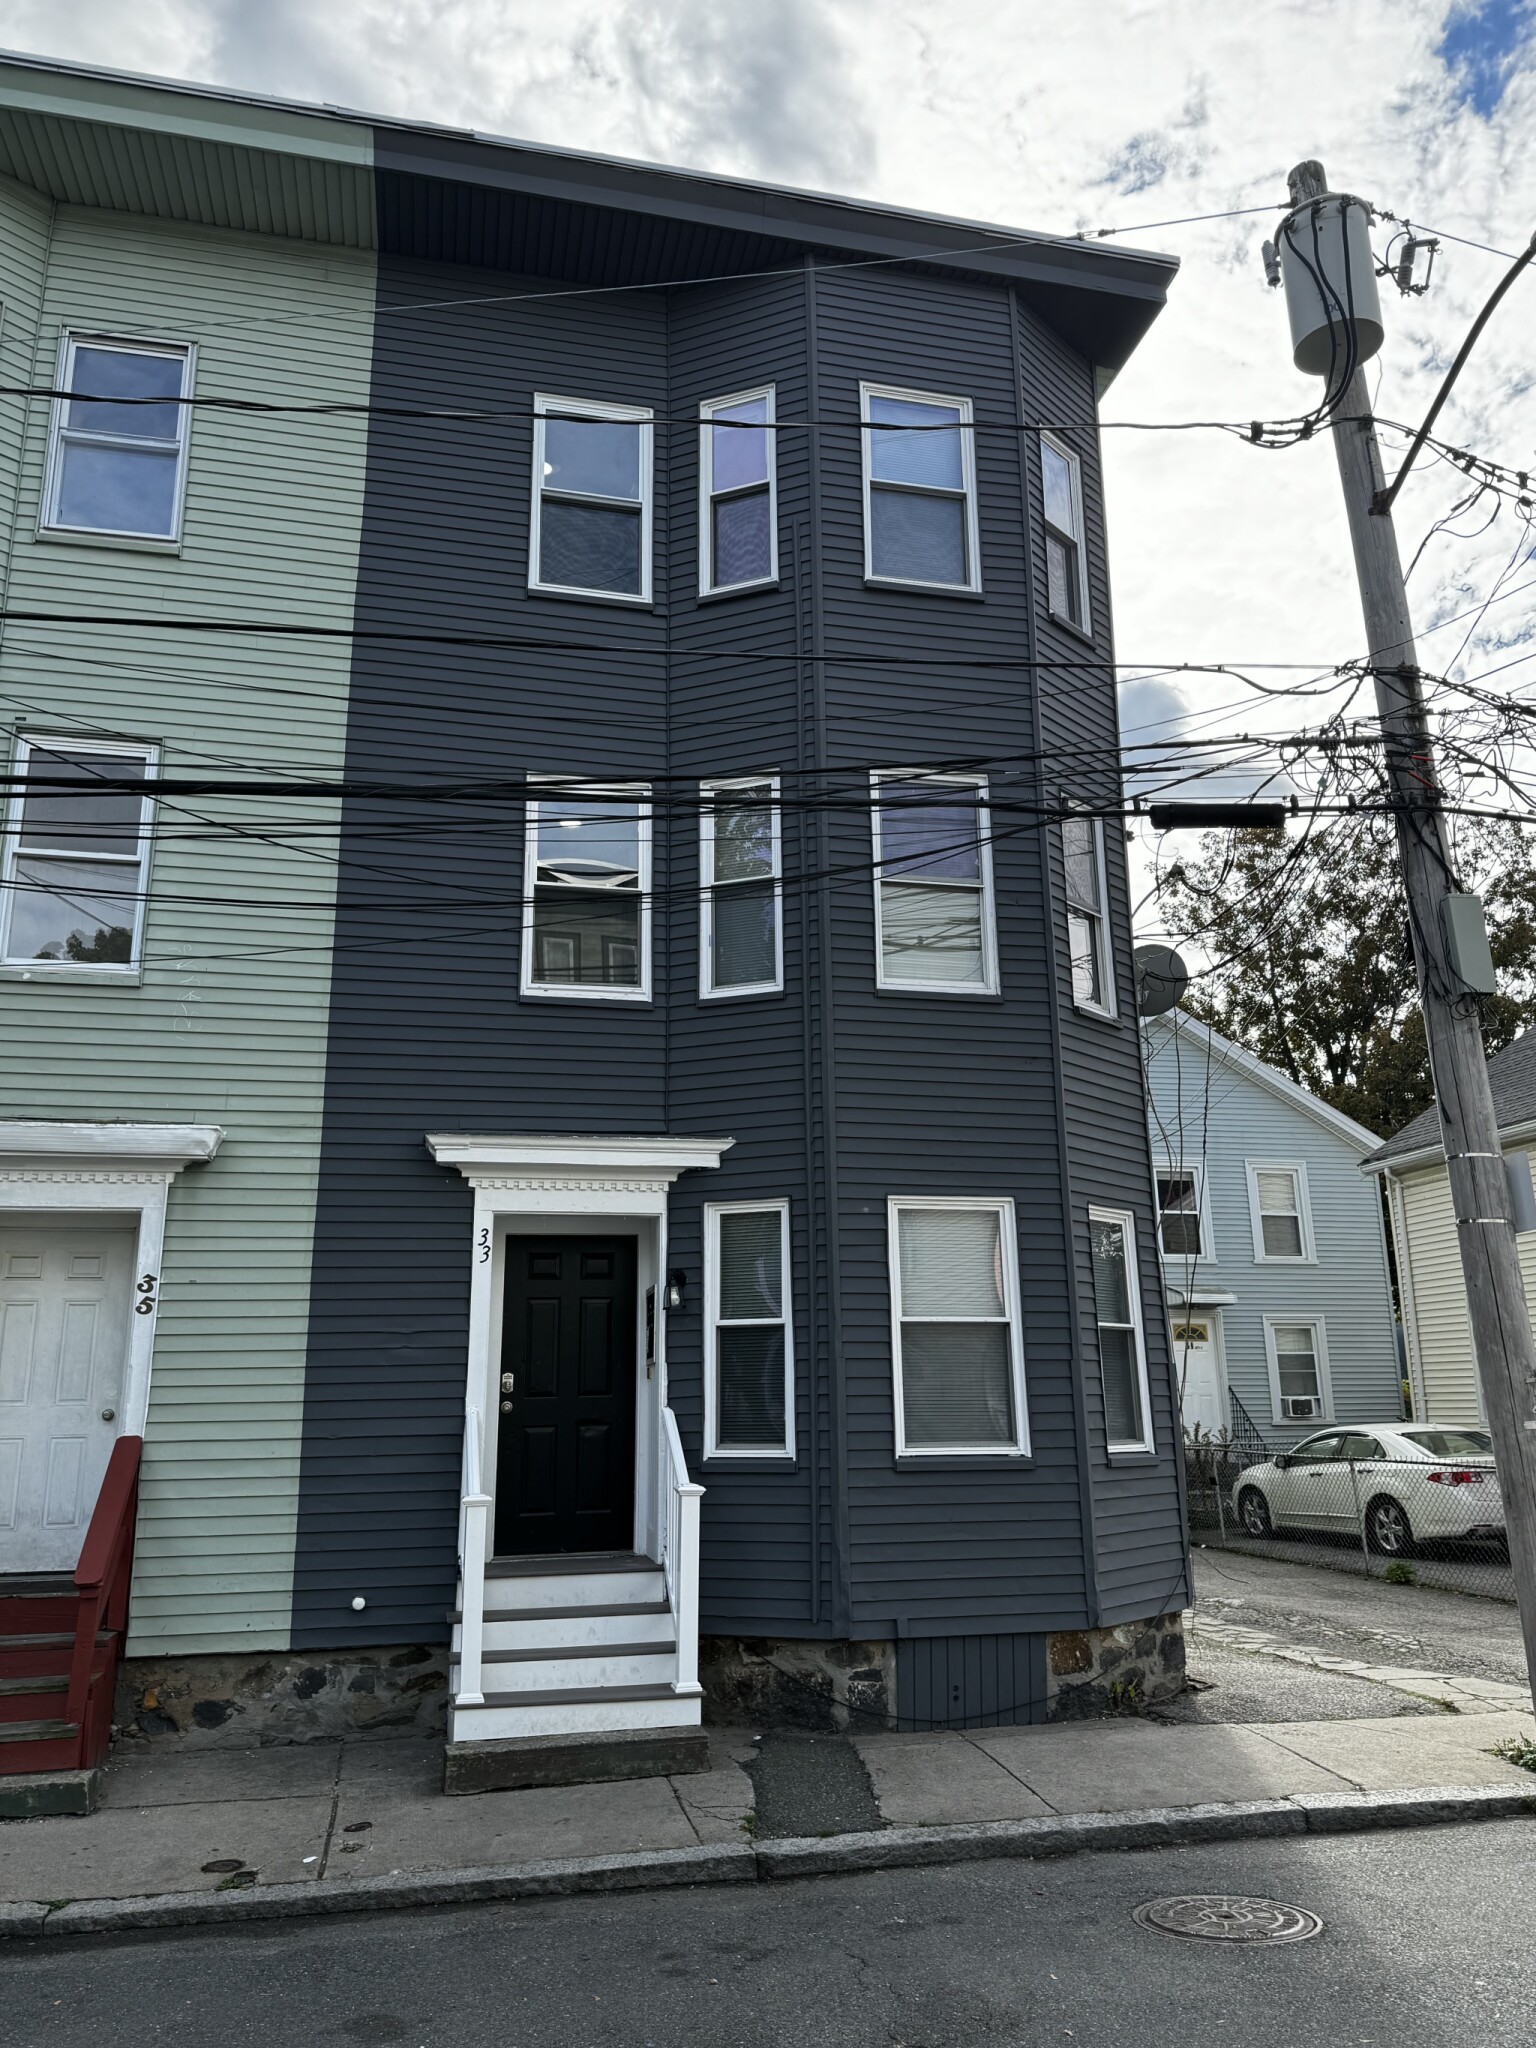 Photos of apartment on Kelton,Boston MA 02134